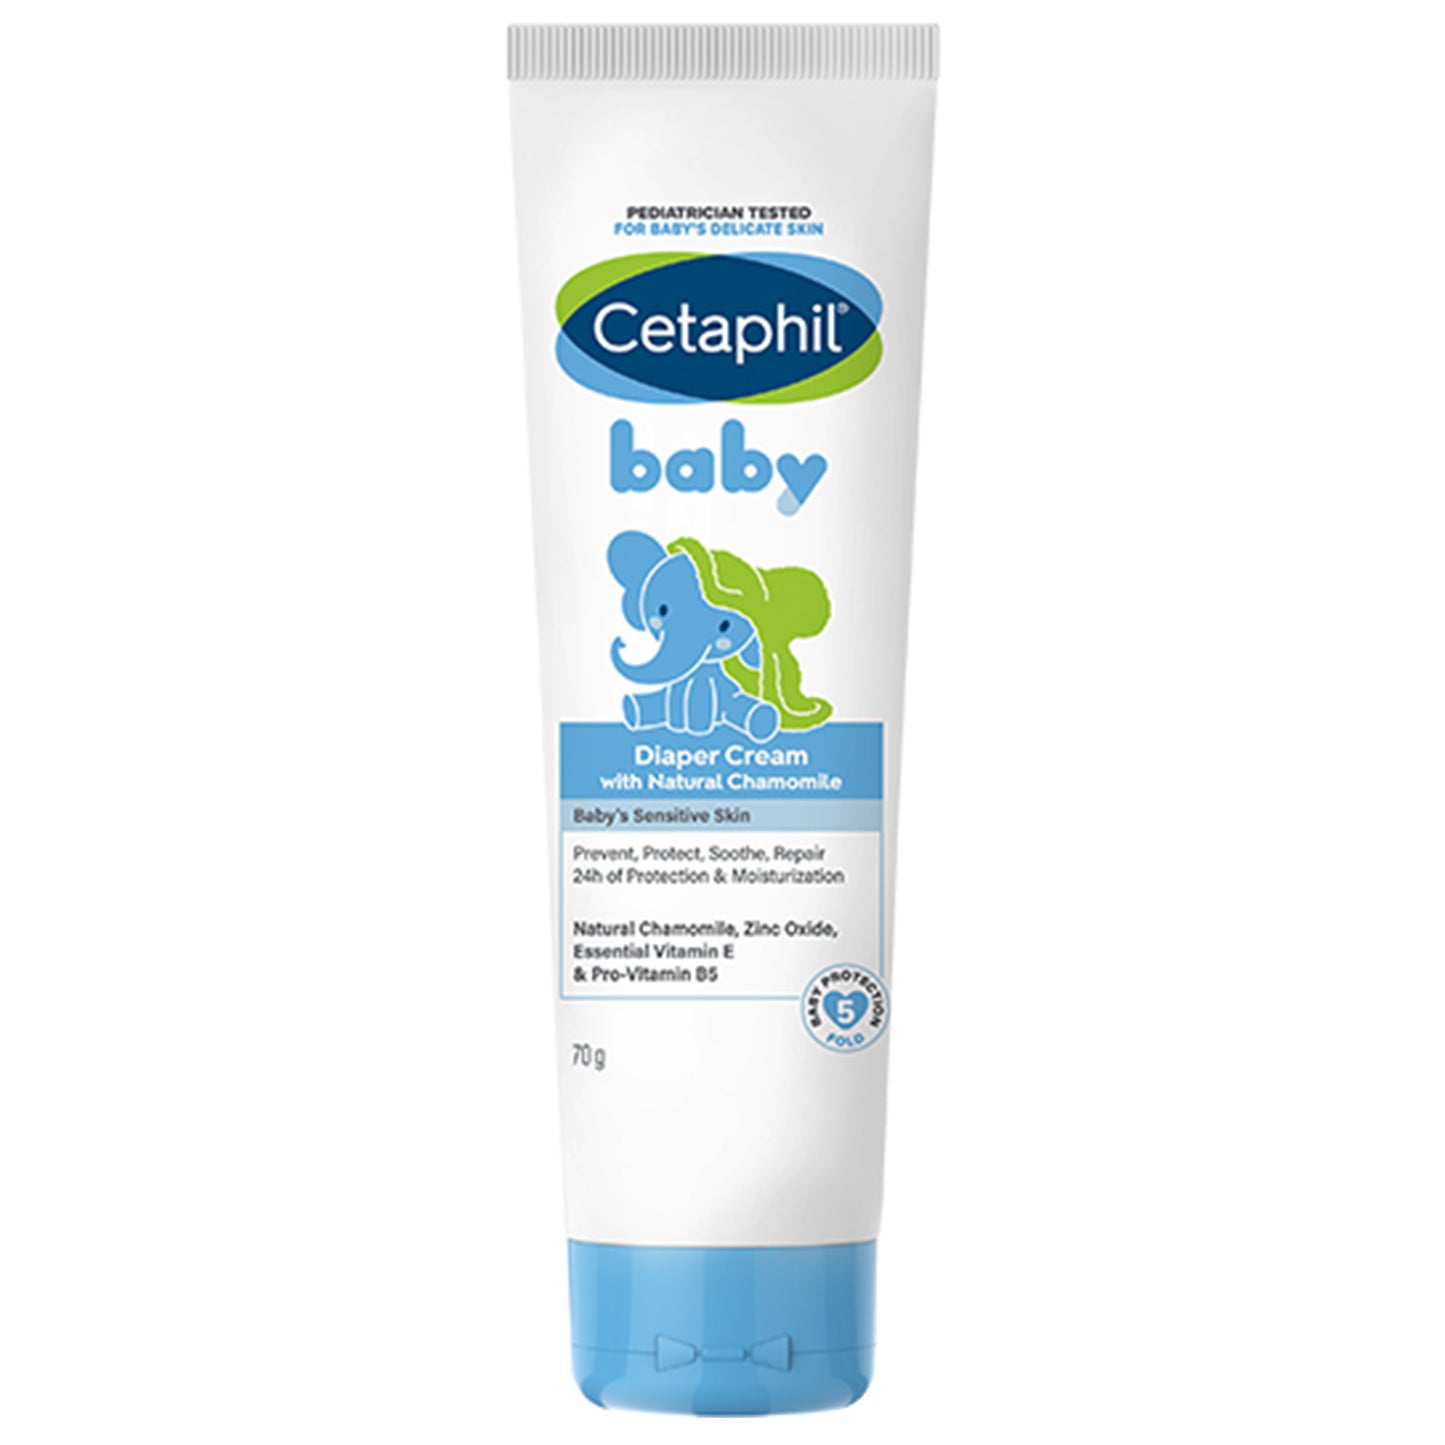 Cetaphil Baby Diaper Cream, 70gm